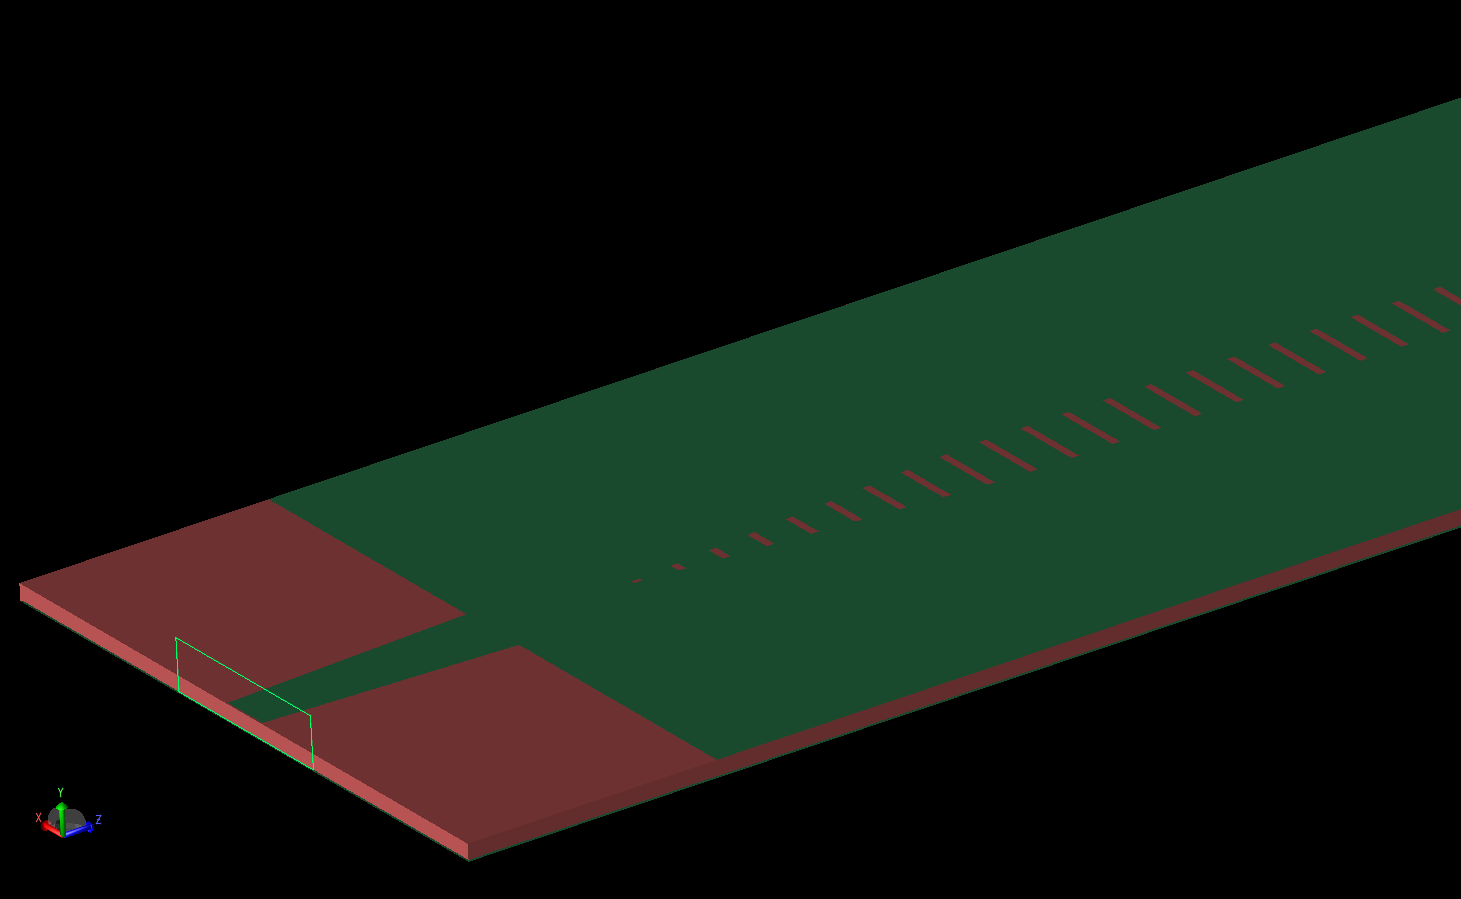 图 3：天线从一个端口的斜视图，显示了与锥形线相连的节点波导端口、基底层的厚度以及开槽顶层的一部分。